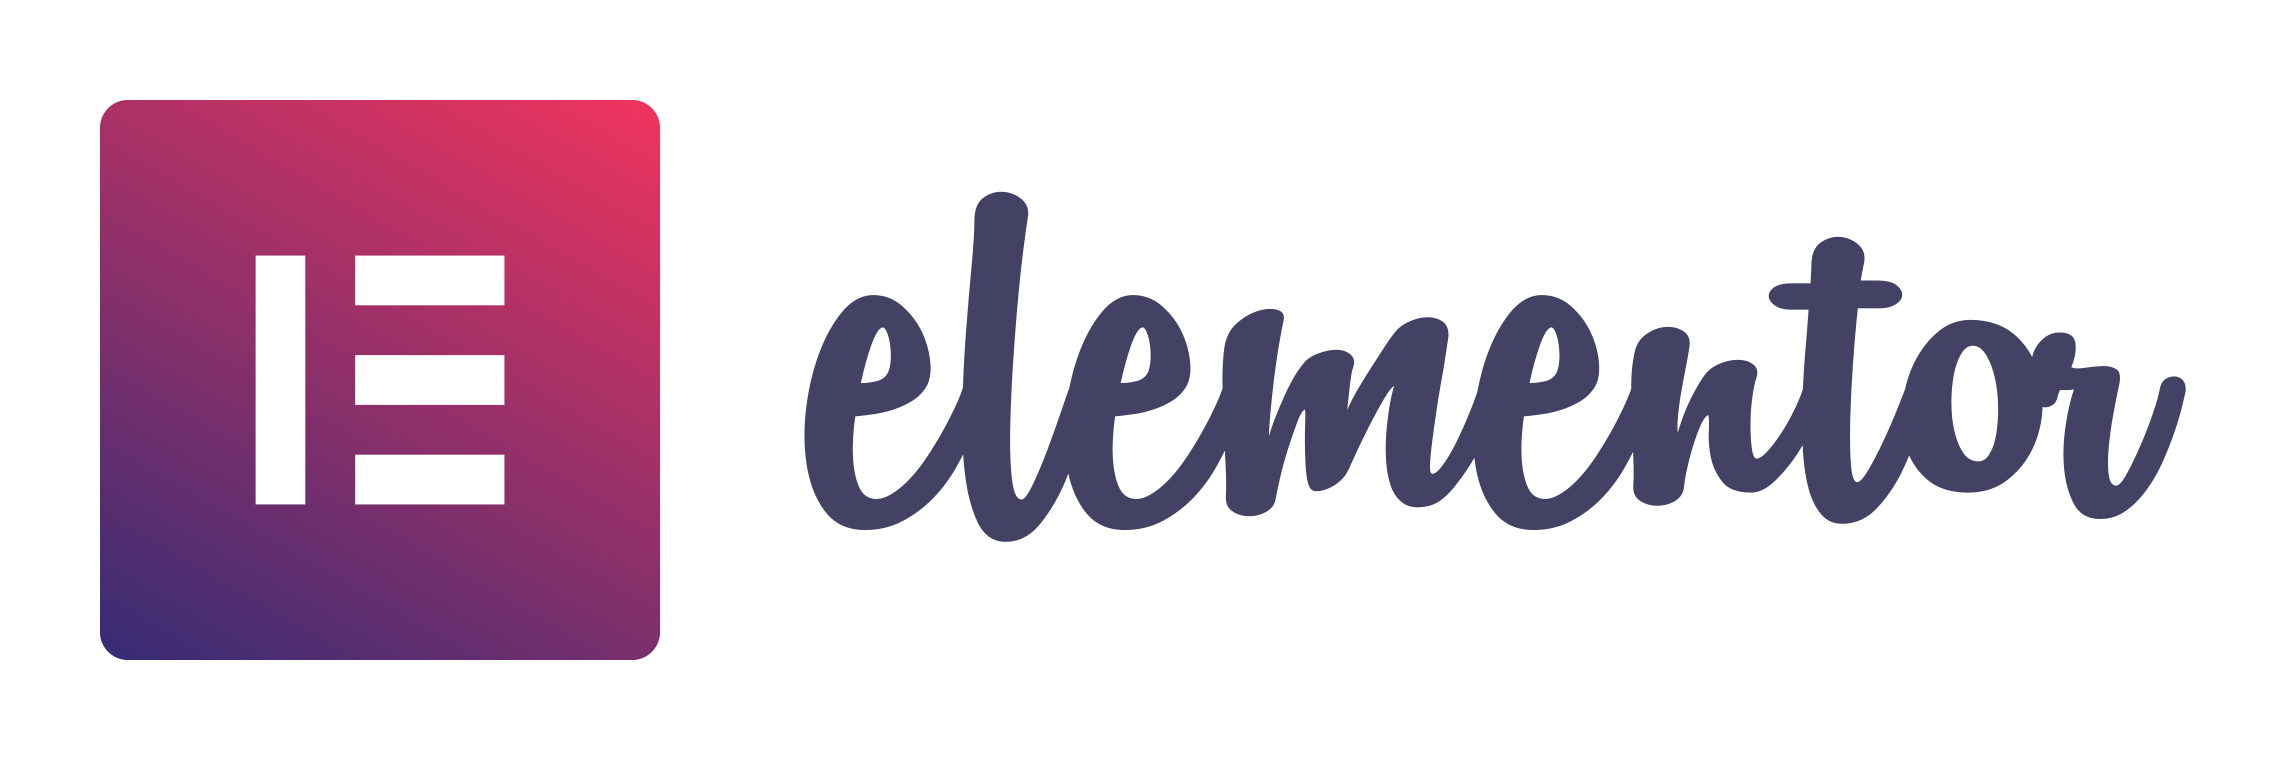 elementor_logo_gradient